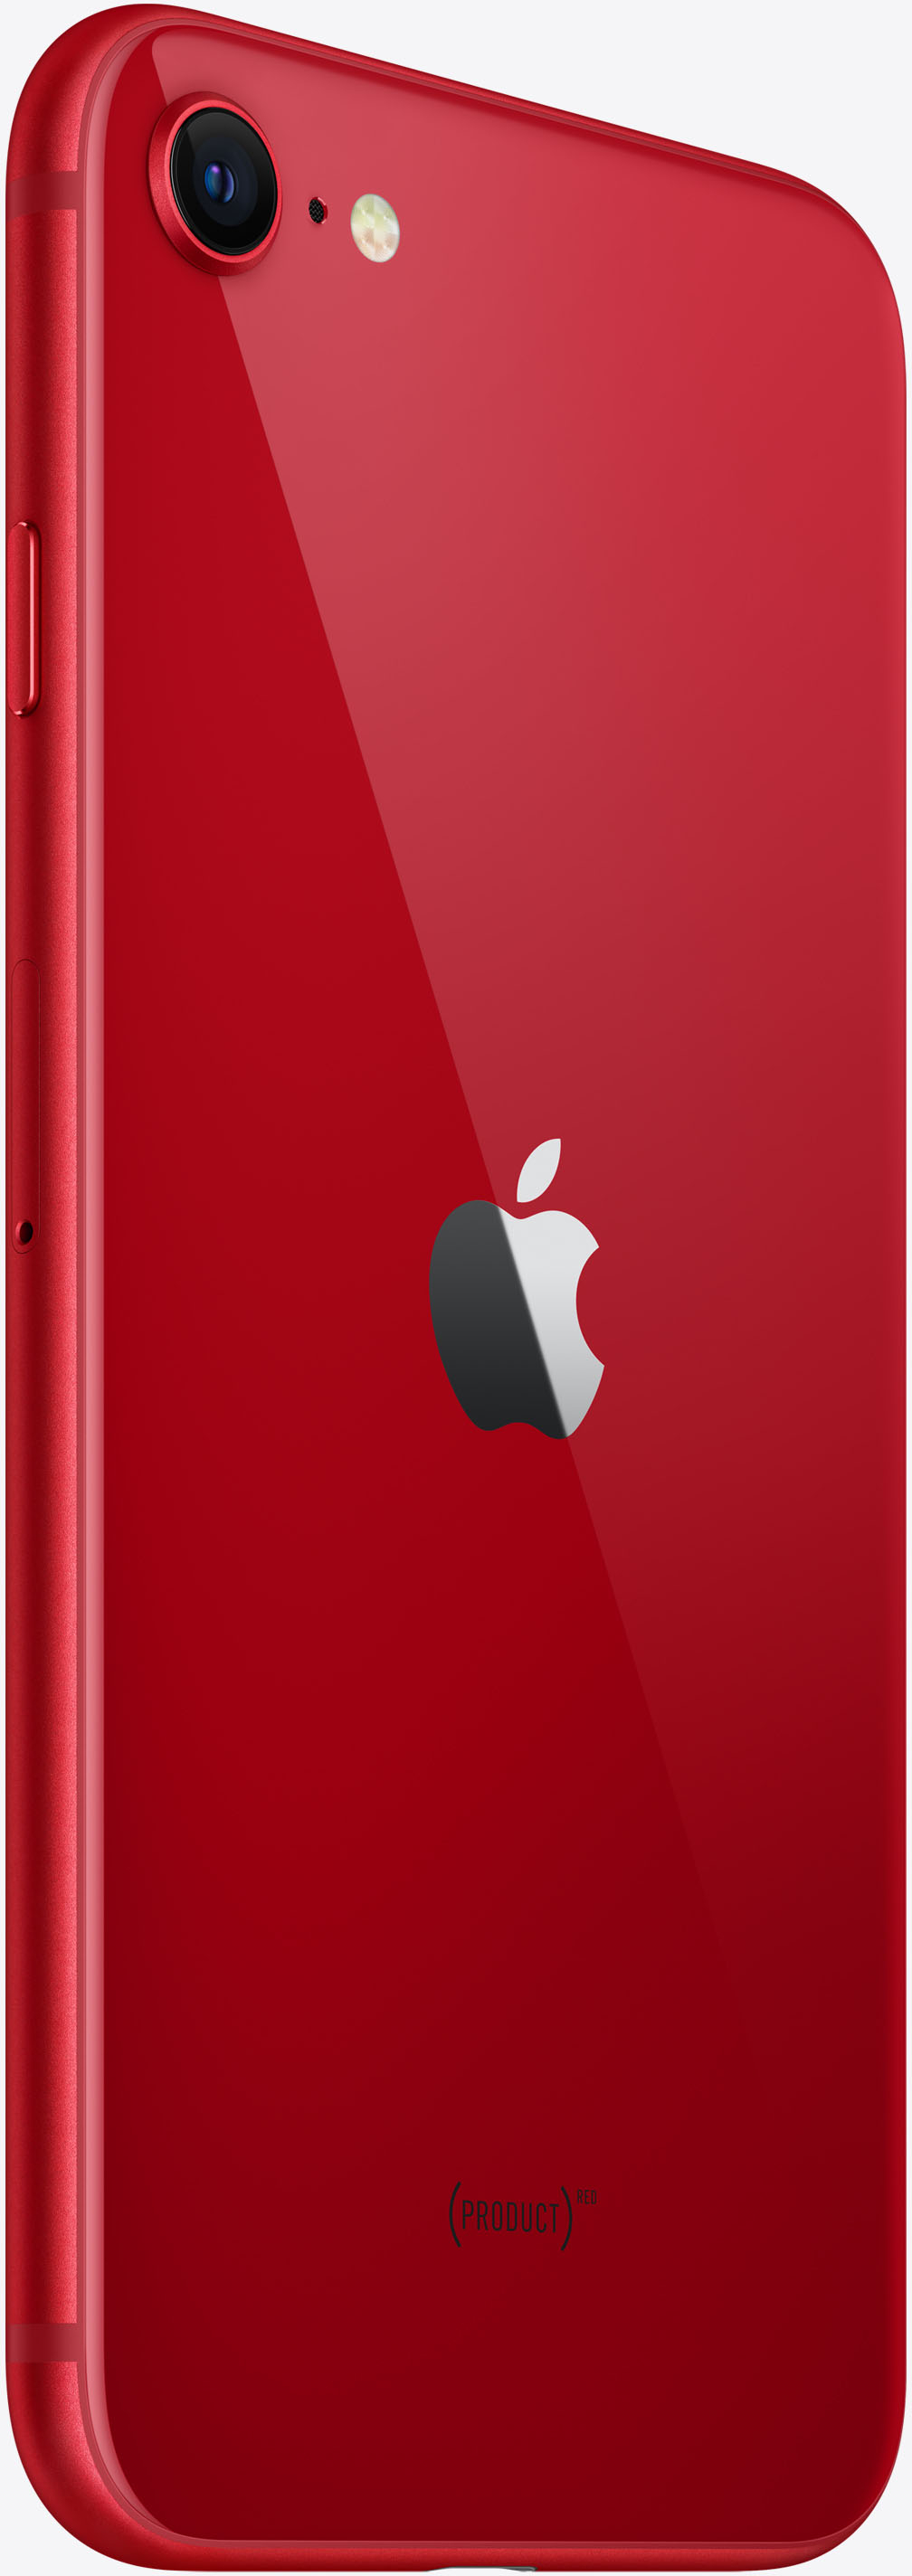 スマートフォン/携帯電話 スマートフォン本体 Best Buy: Apple iPhone SE (3rd Generation) 64GB (PRODUCT)RED (Verizon)  MMX73LL/A